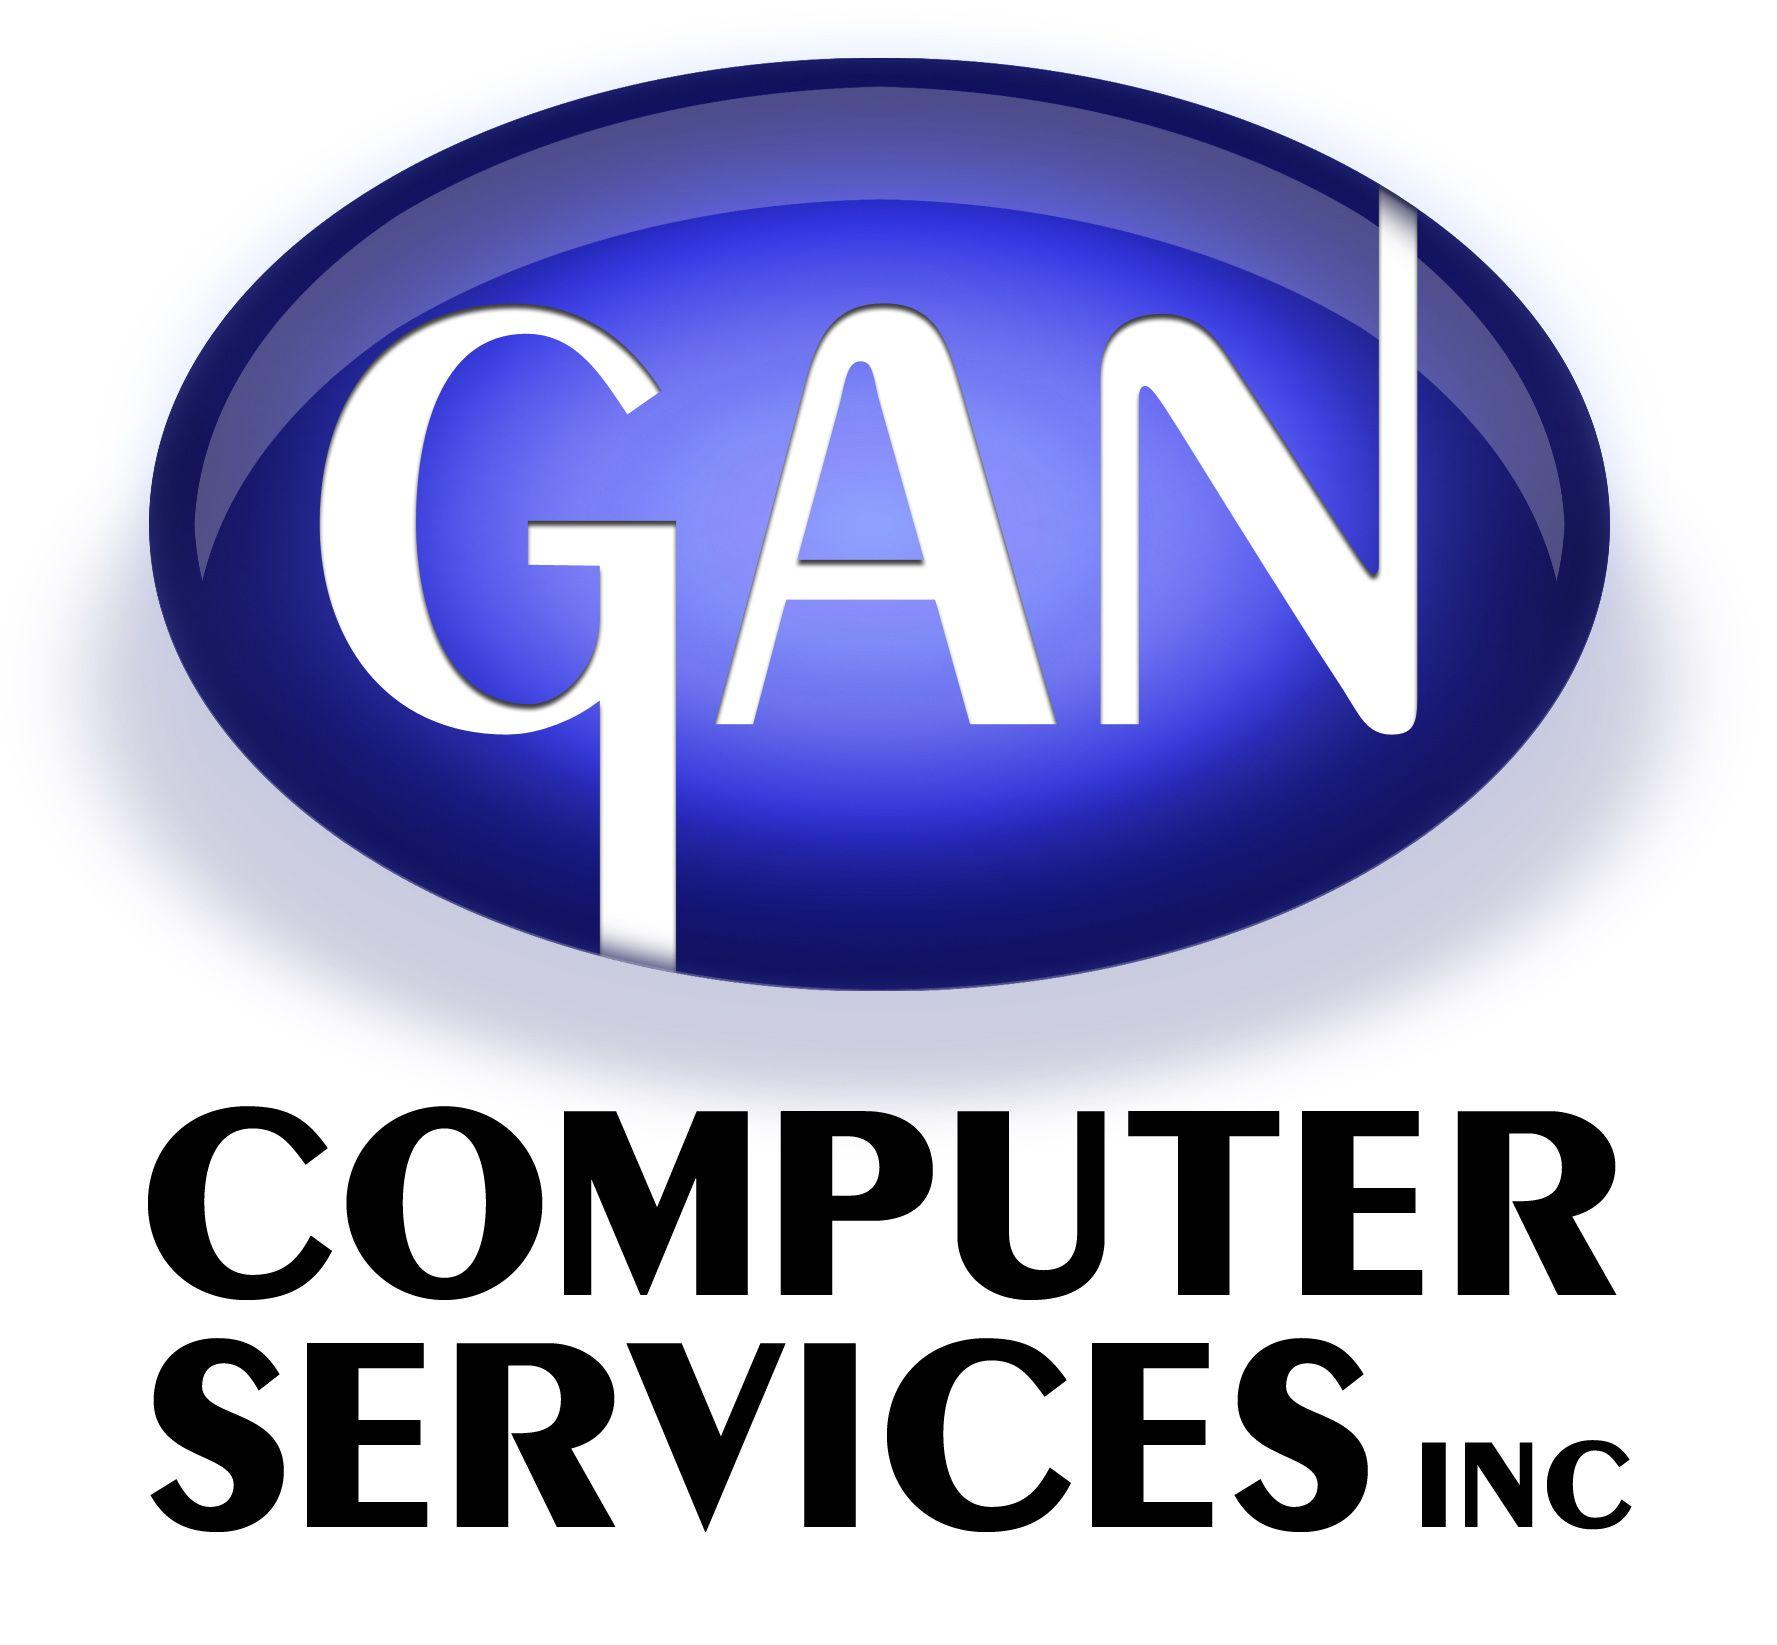 Gan Logo - LogoDix